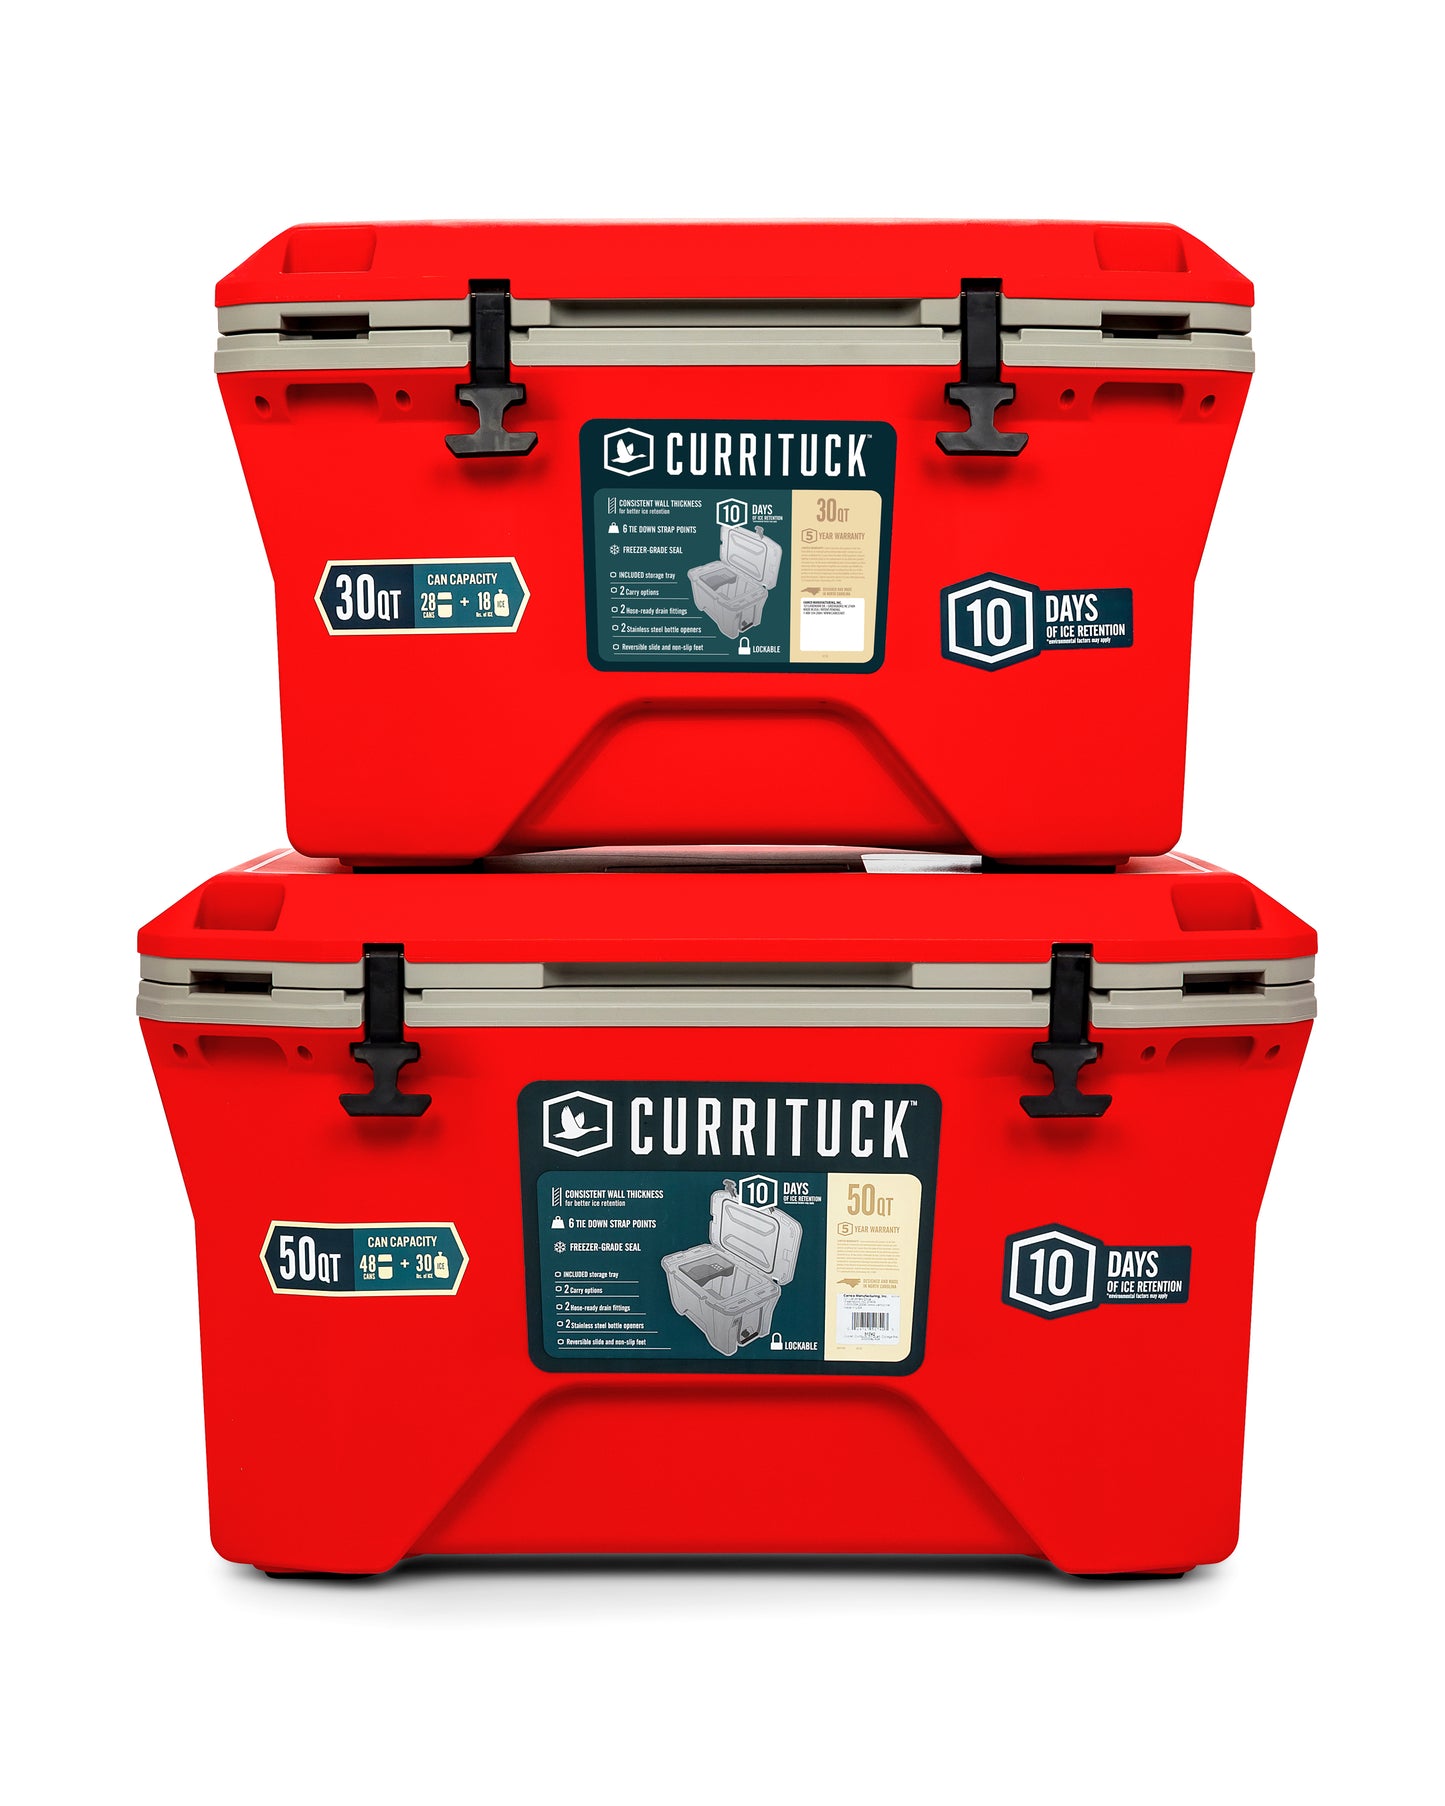 Currituck 30 and 50 Quart Premium Cooler - Red & Gray